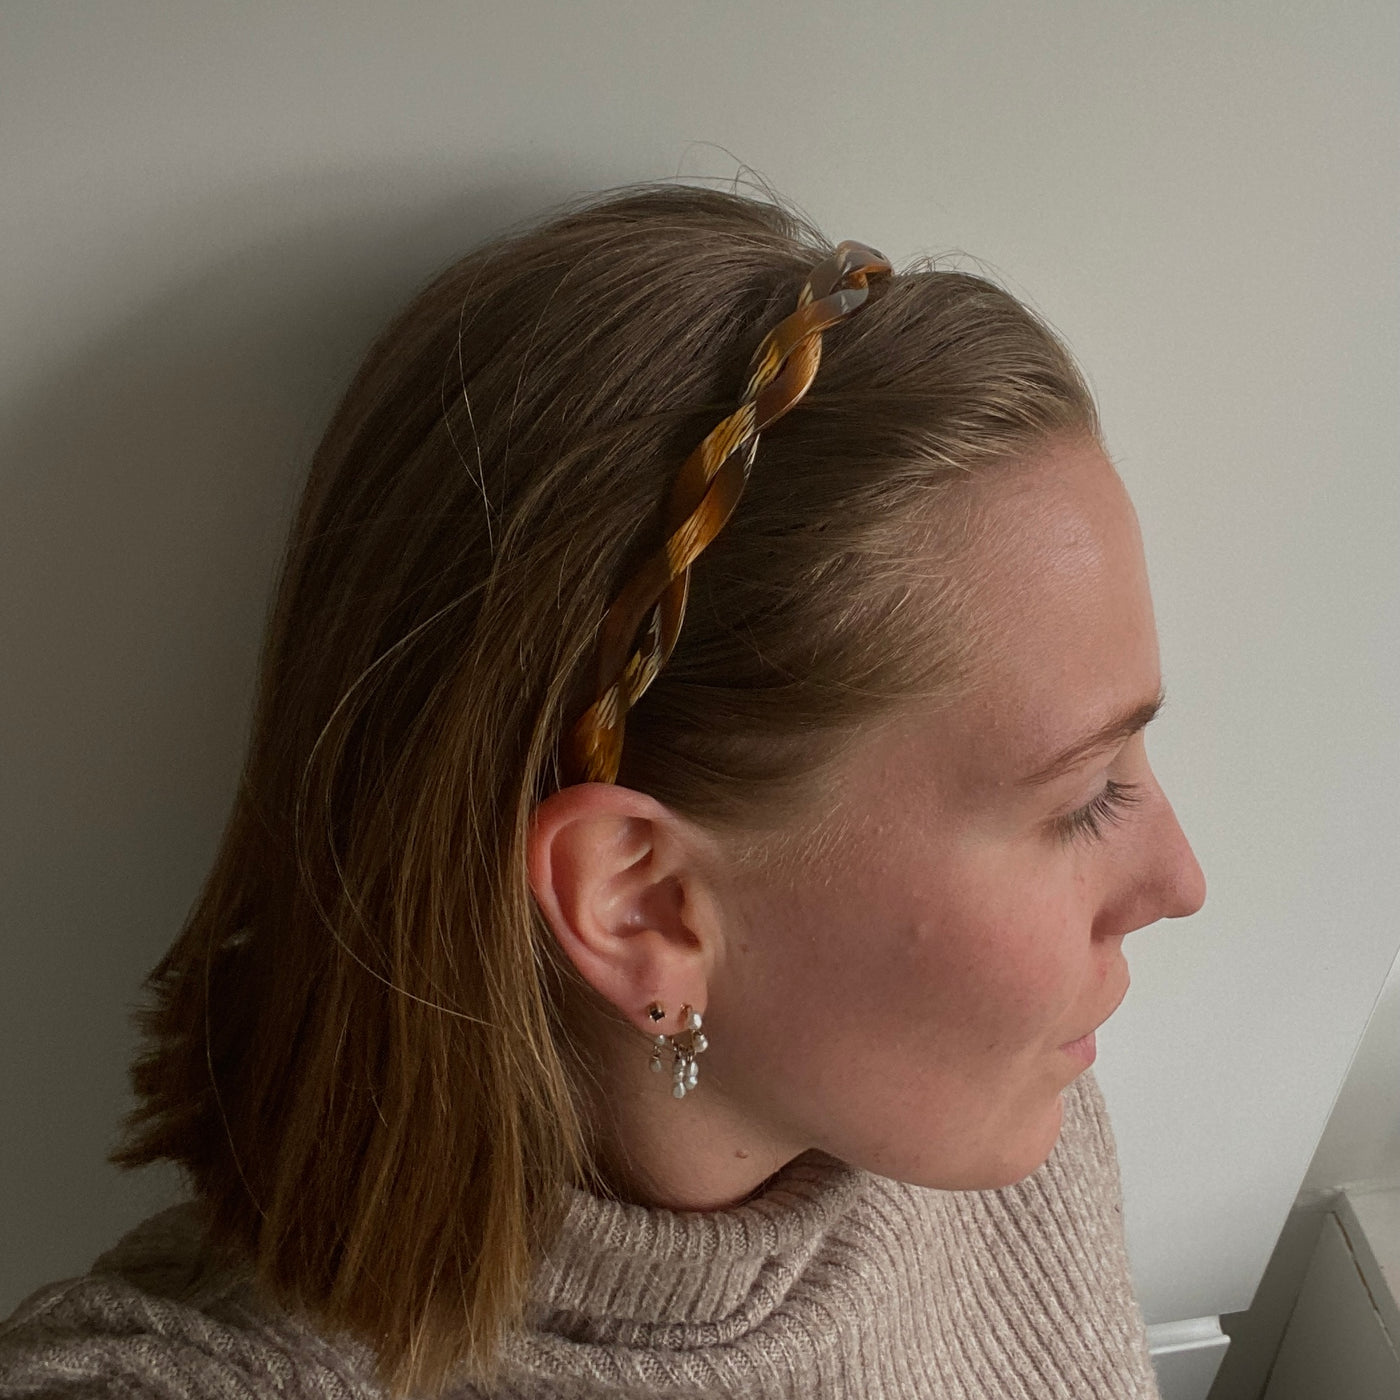 Udforsk hårbøjler - Alberte brun hårbøjle fra Orphic Style – en elegant hårbøjle der ikke gør ondt bag ørerne - hårbøjler der ikke klemmer